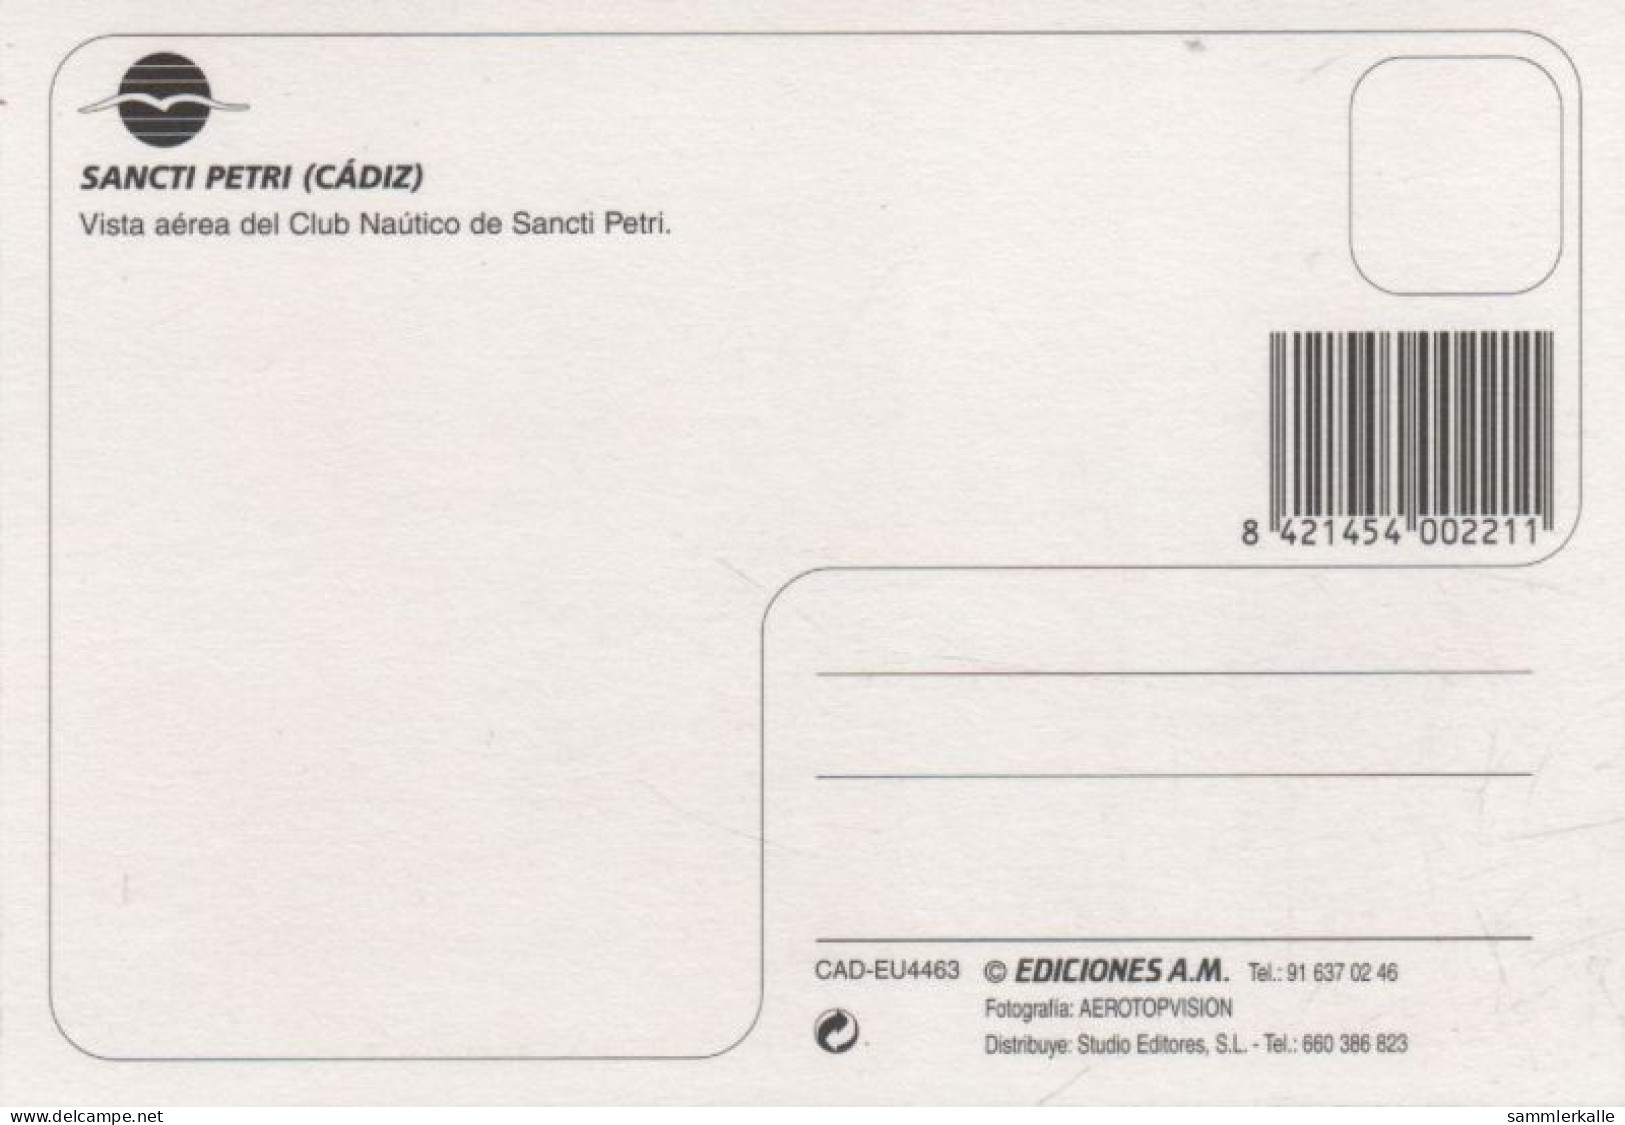 9001265 - Cadiz - Spanien - Sancti Petri - Cádiz